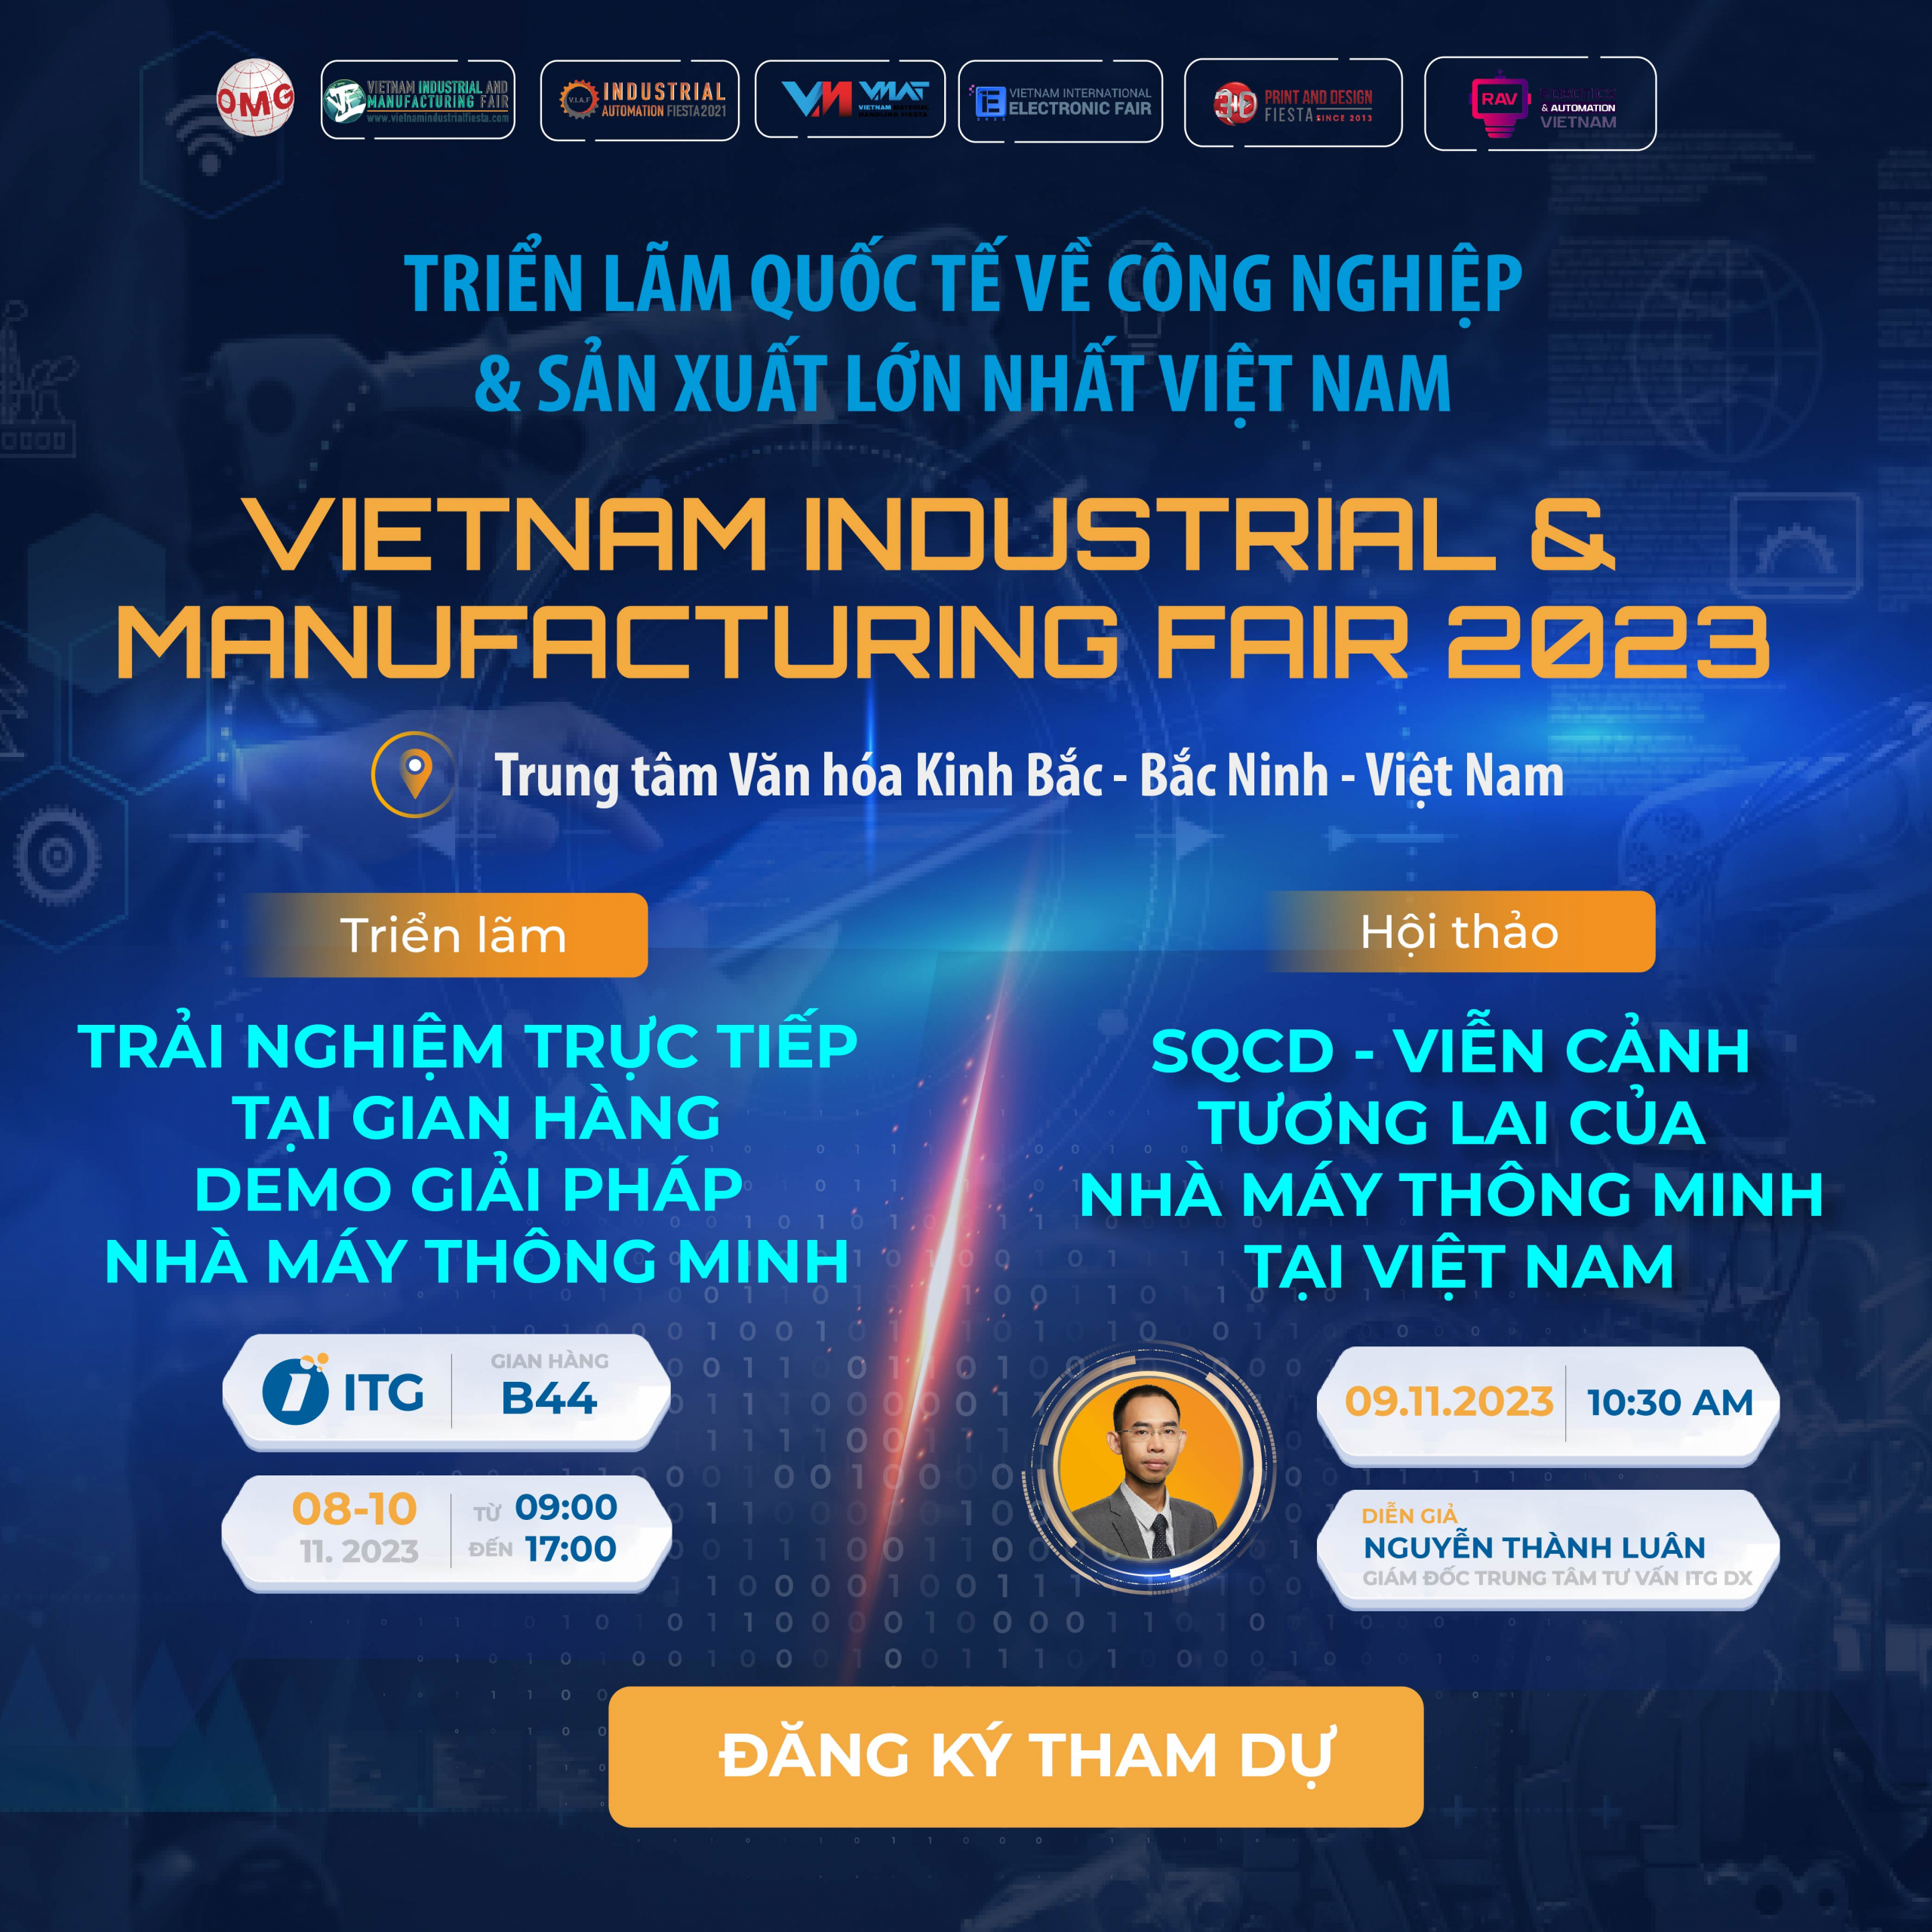 Cơ hội trải nghiệm giải pháp Nhà máy thông minh & Tham dự Hội thảo chuyên đề tại Triển lãm Quốc tế VIMF Bắc Ninh 2023